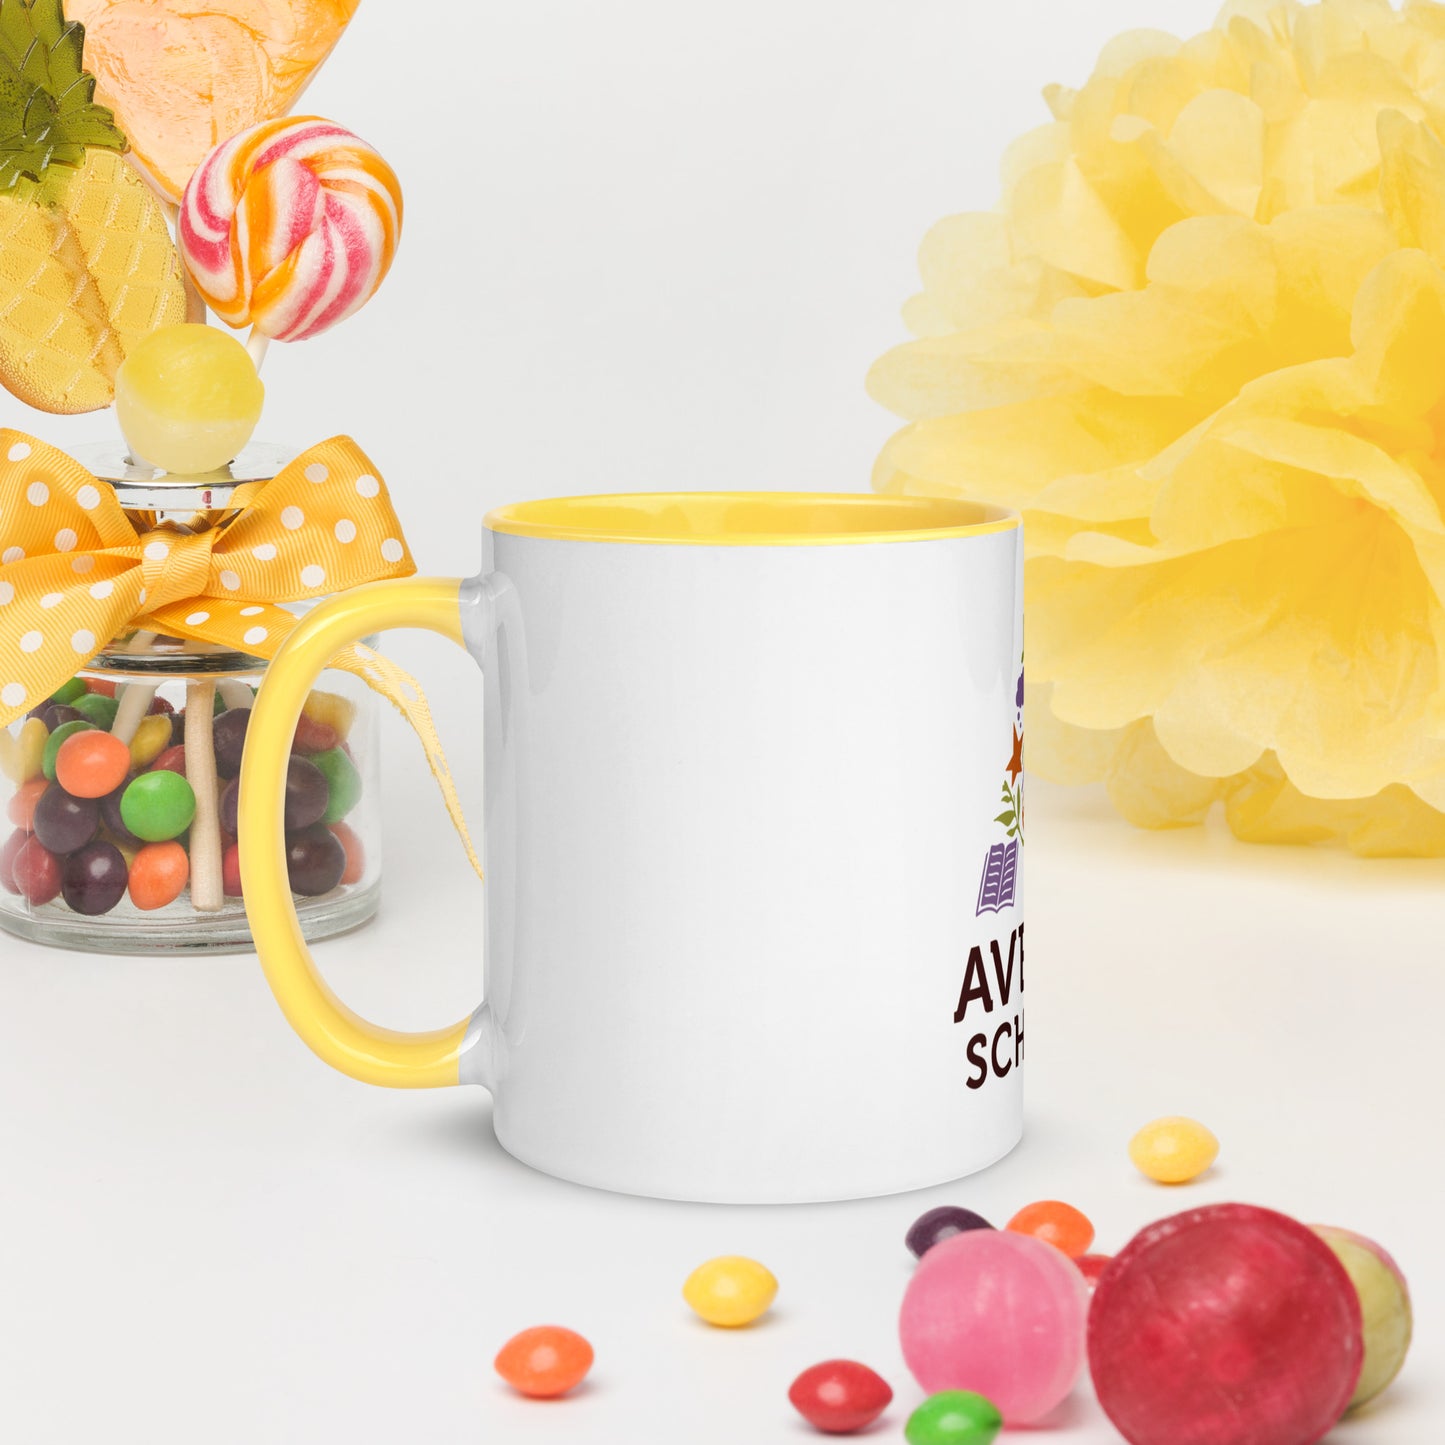 Aveson Colorful Mug